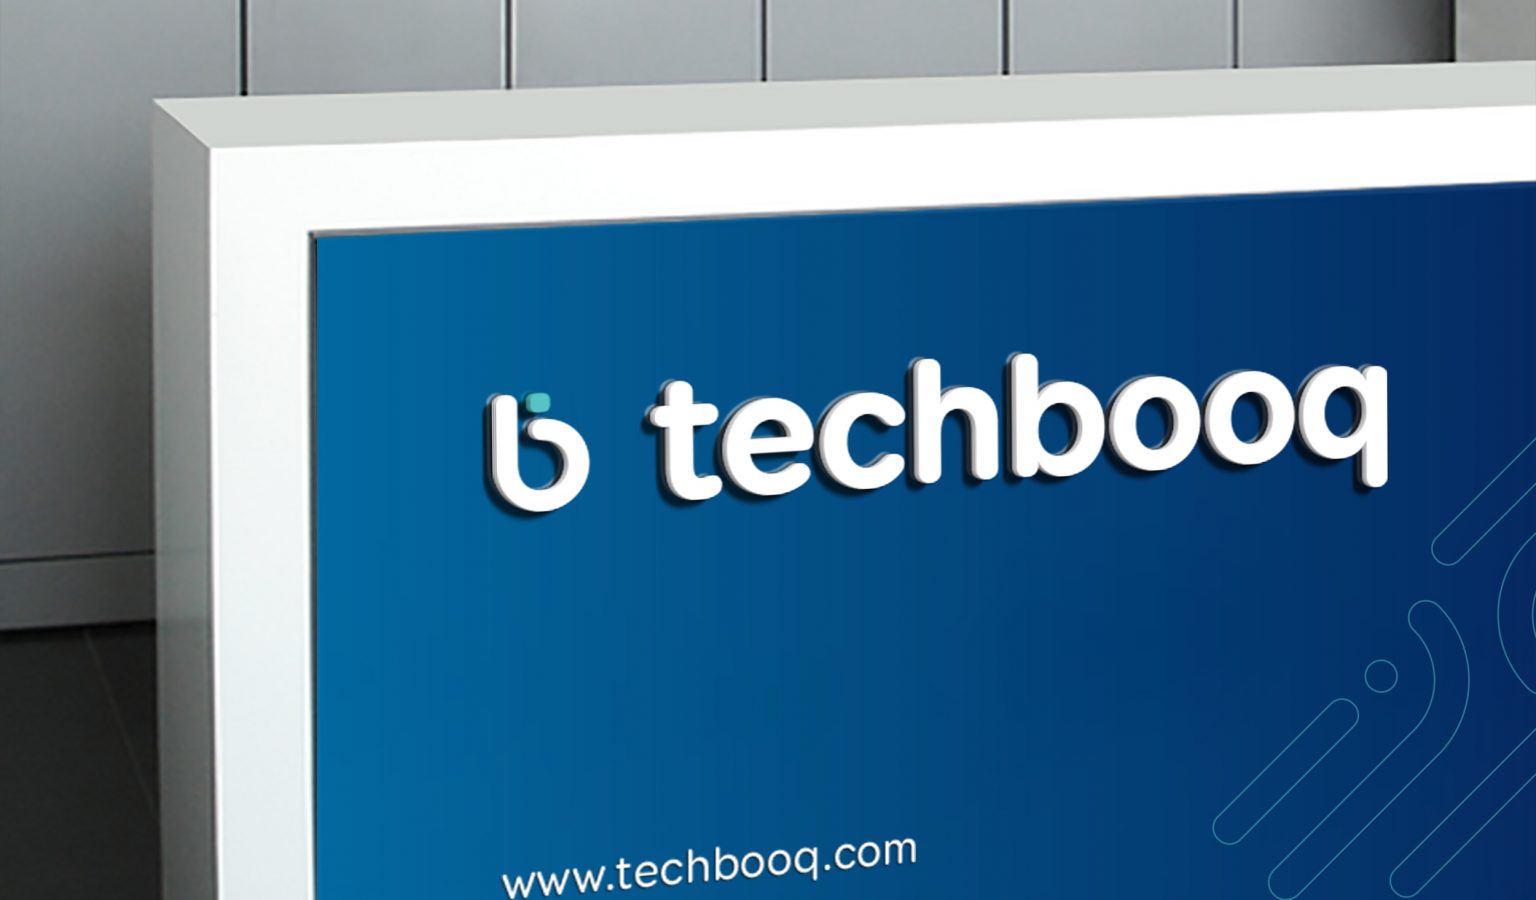 Techbooq-Reception-branding-whyletz